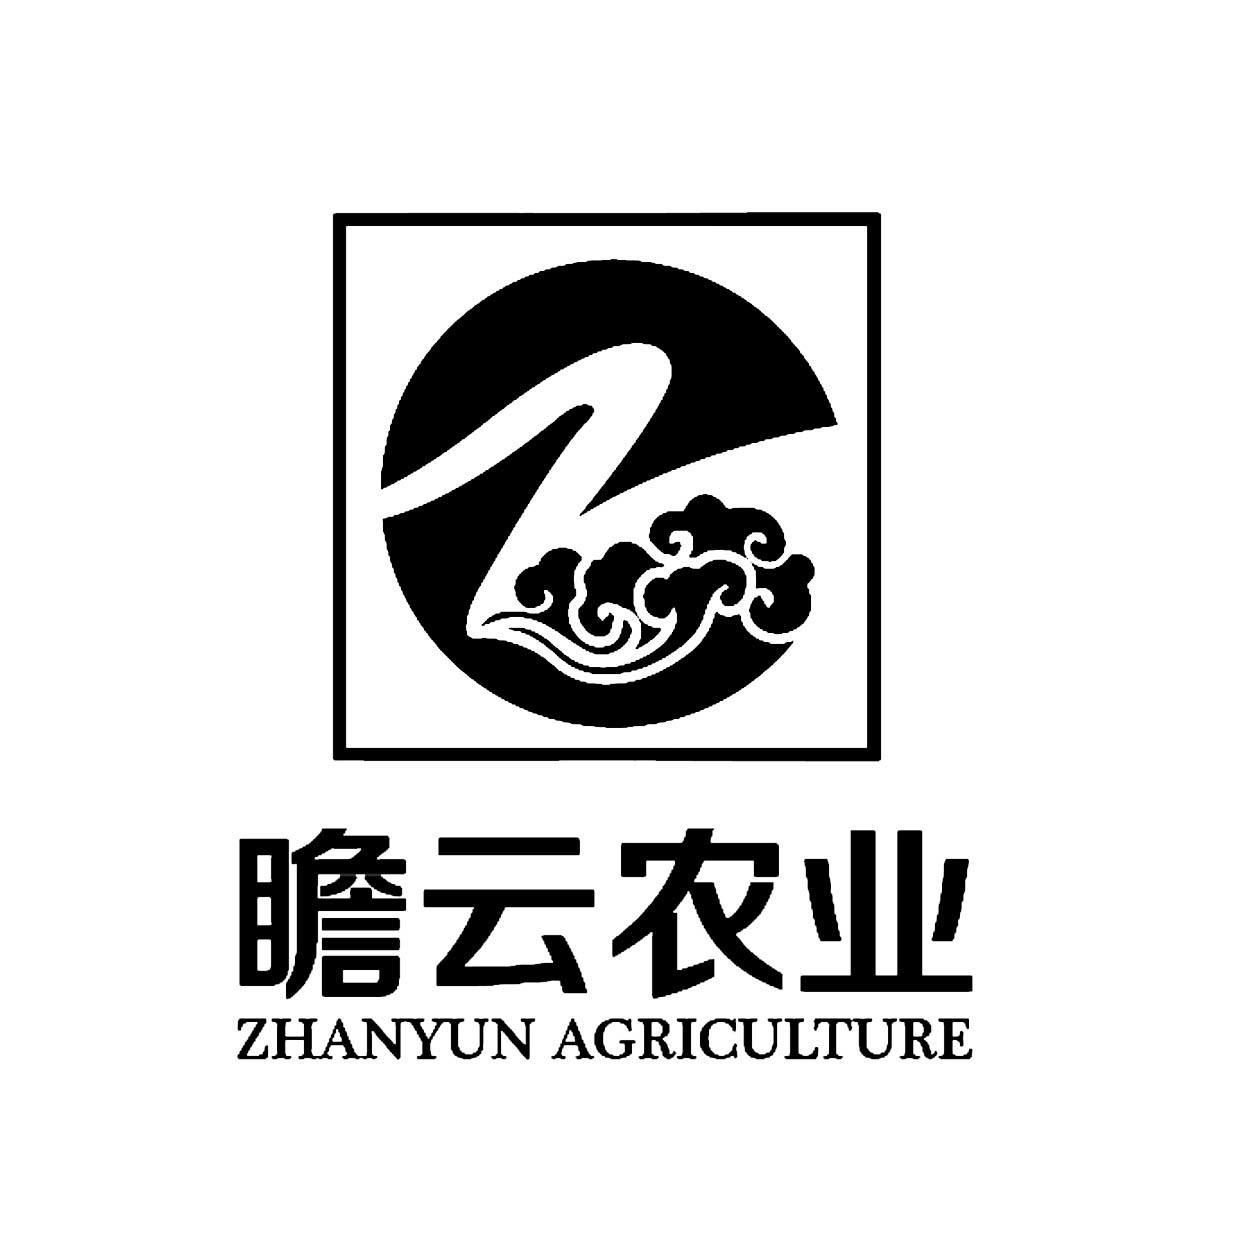 瞻云农业 ZHANYUN AGRICULTURE